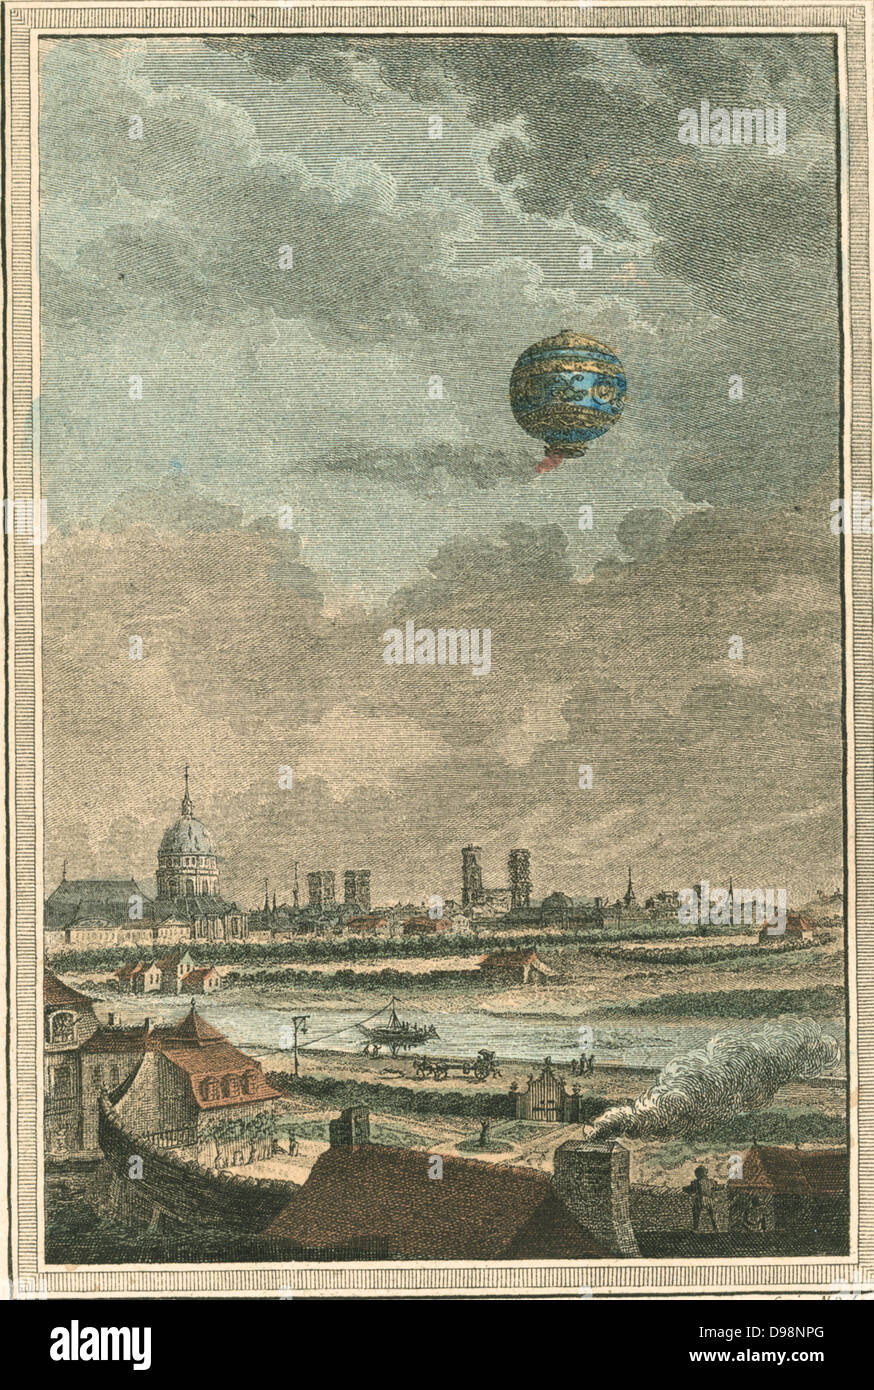 L'air chaud des frères Montgolfier montgolfière sur Paris, France, 1783. Gravure de Nicolas de Launay, graveur français. Aviation Aéronautique Vol Banque D'Images